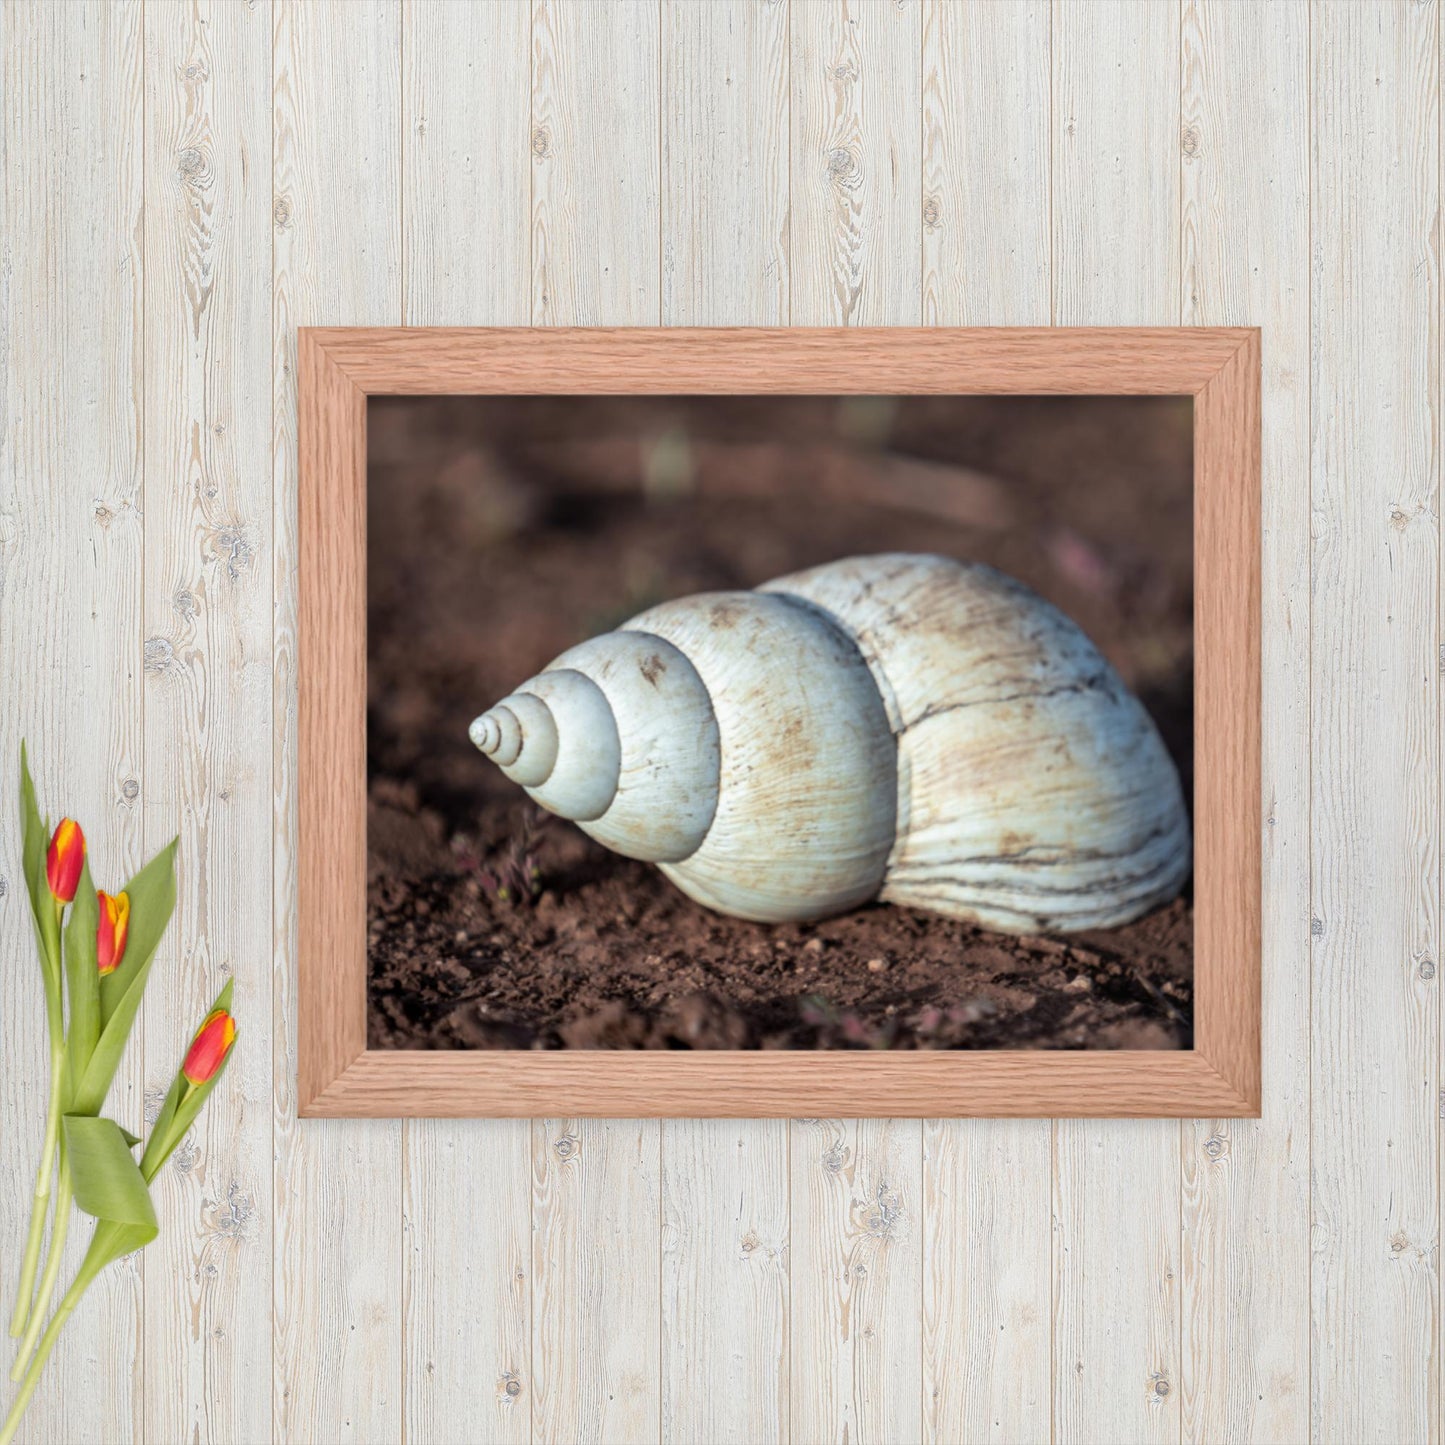 Spiral of Serenity - Giant Snail Shell - Framed poster